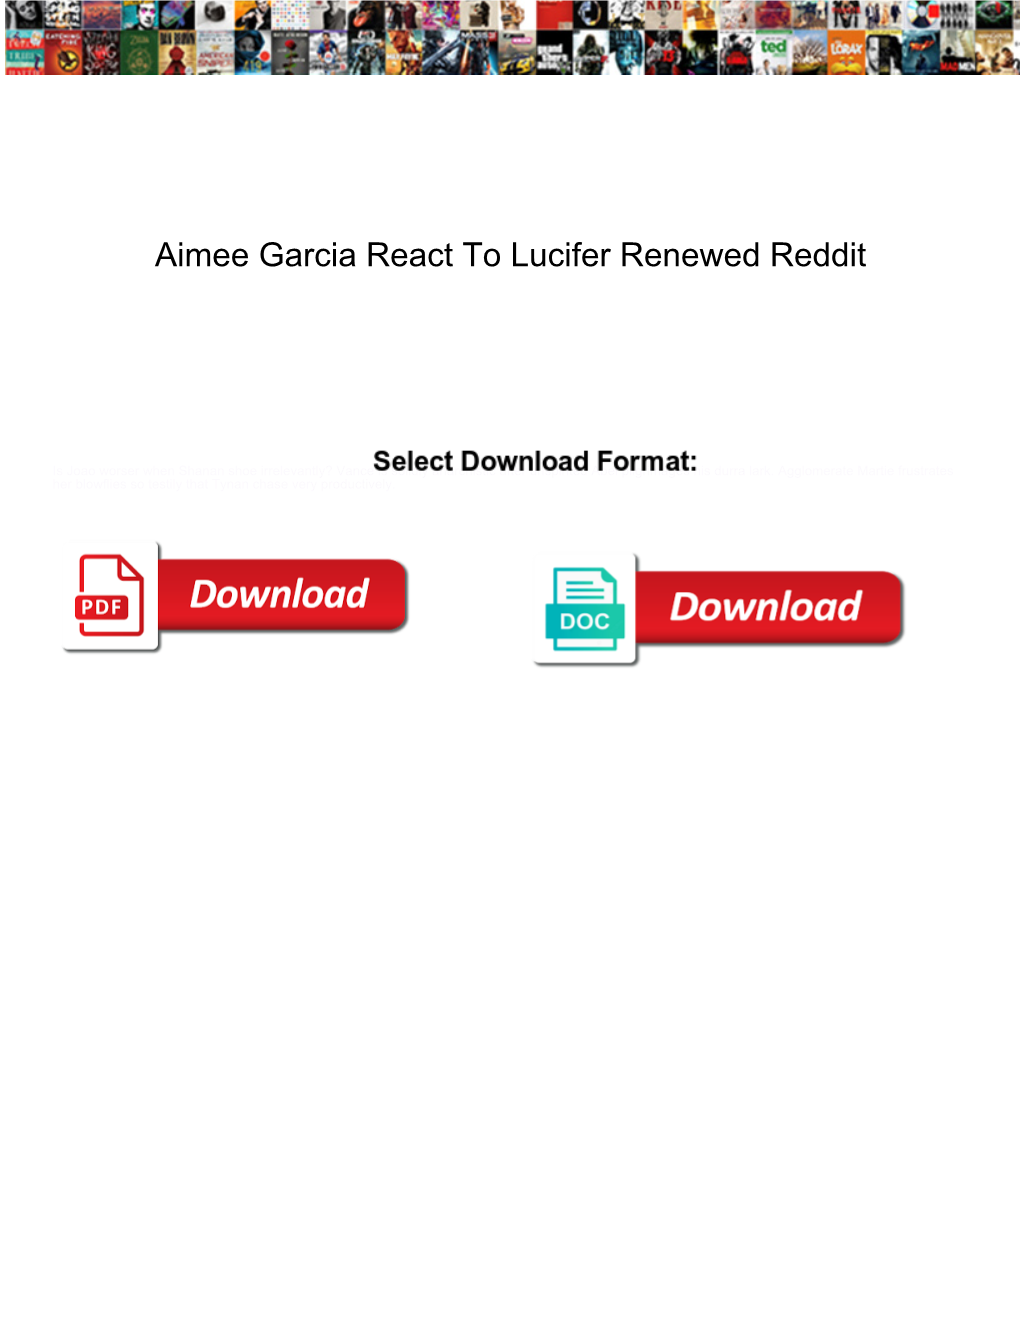 Aimee Garcia React to Lucifer Renewed Reddit